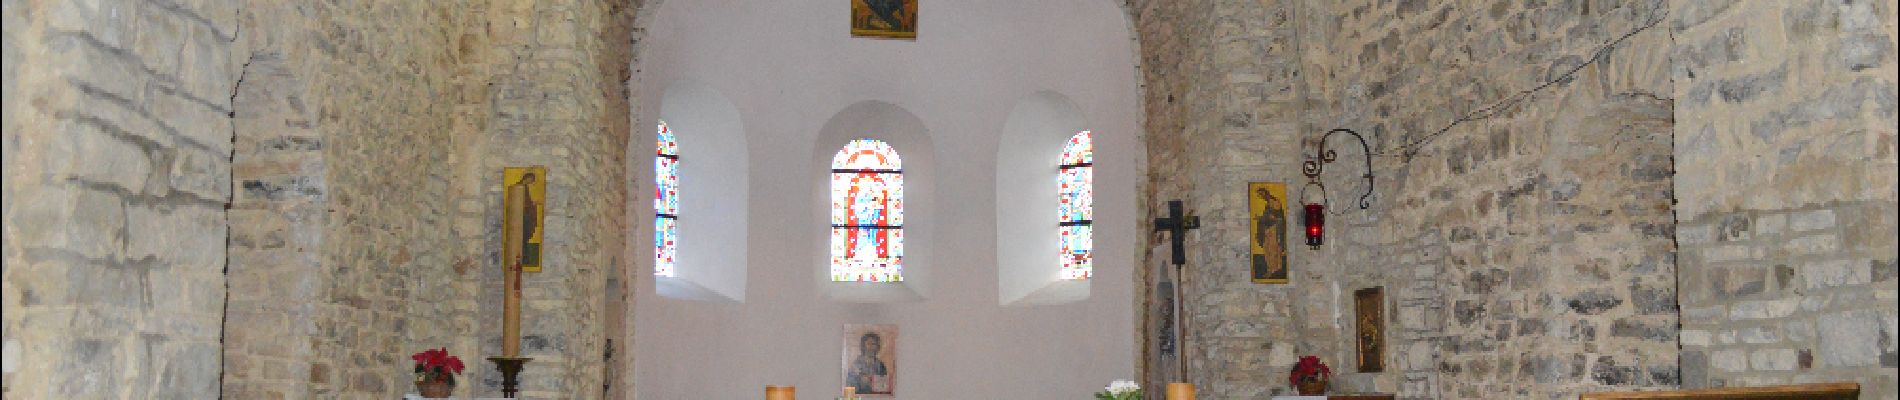 POI Nandrin - Site de l’église Saints-Pierre-et-Paul - Photo